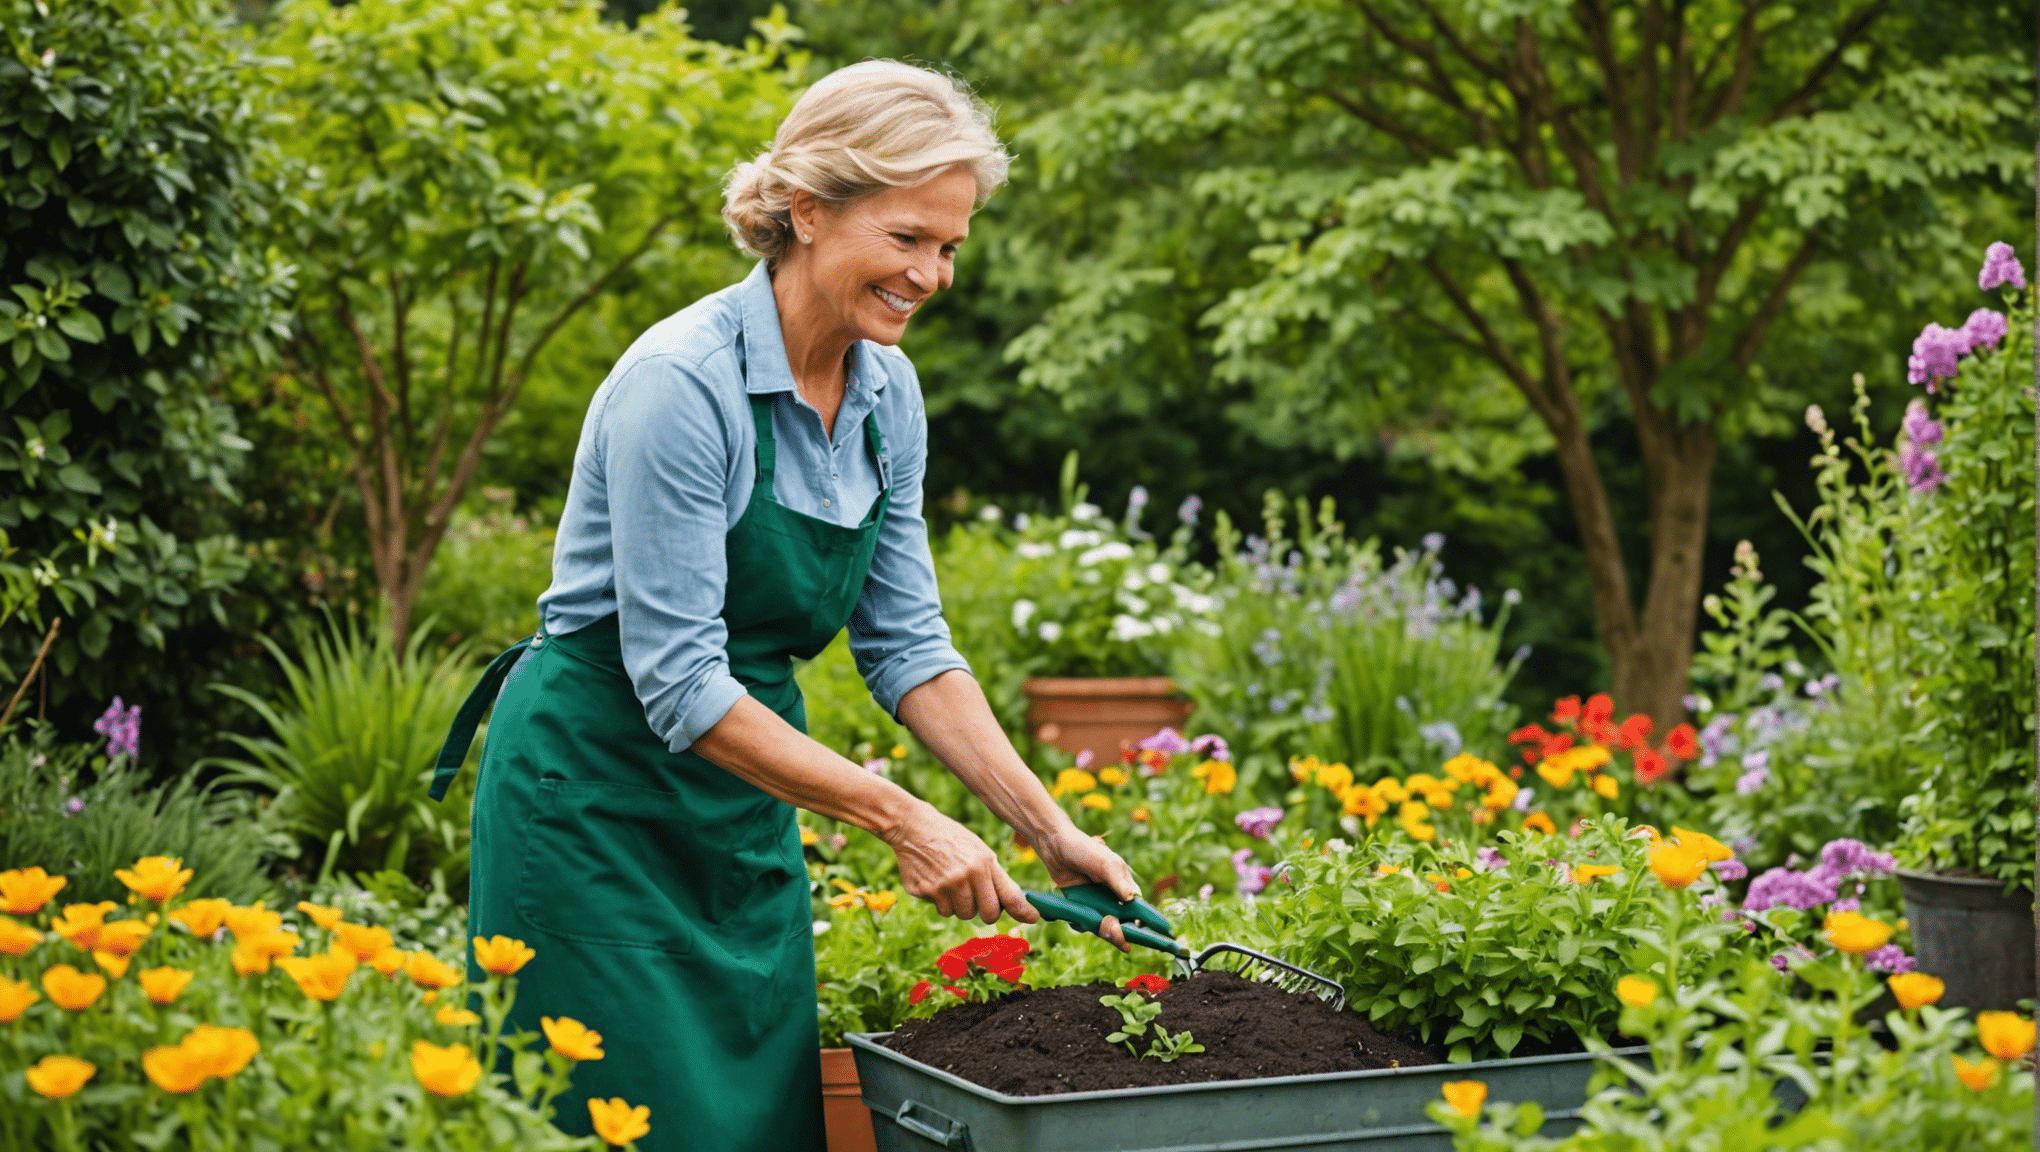 odkrijte 14 najbolj iznajdljivih vrtnarskih nasvetov in idej za izboljšanje vaše vrtnarske izkušnje. od kreativnih tehnik sajenja do rešitev, ki prihranijo prostor, poiščite navdih za svoj vrt.